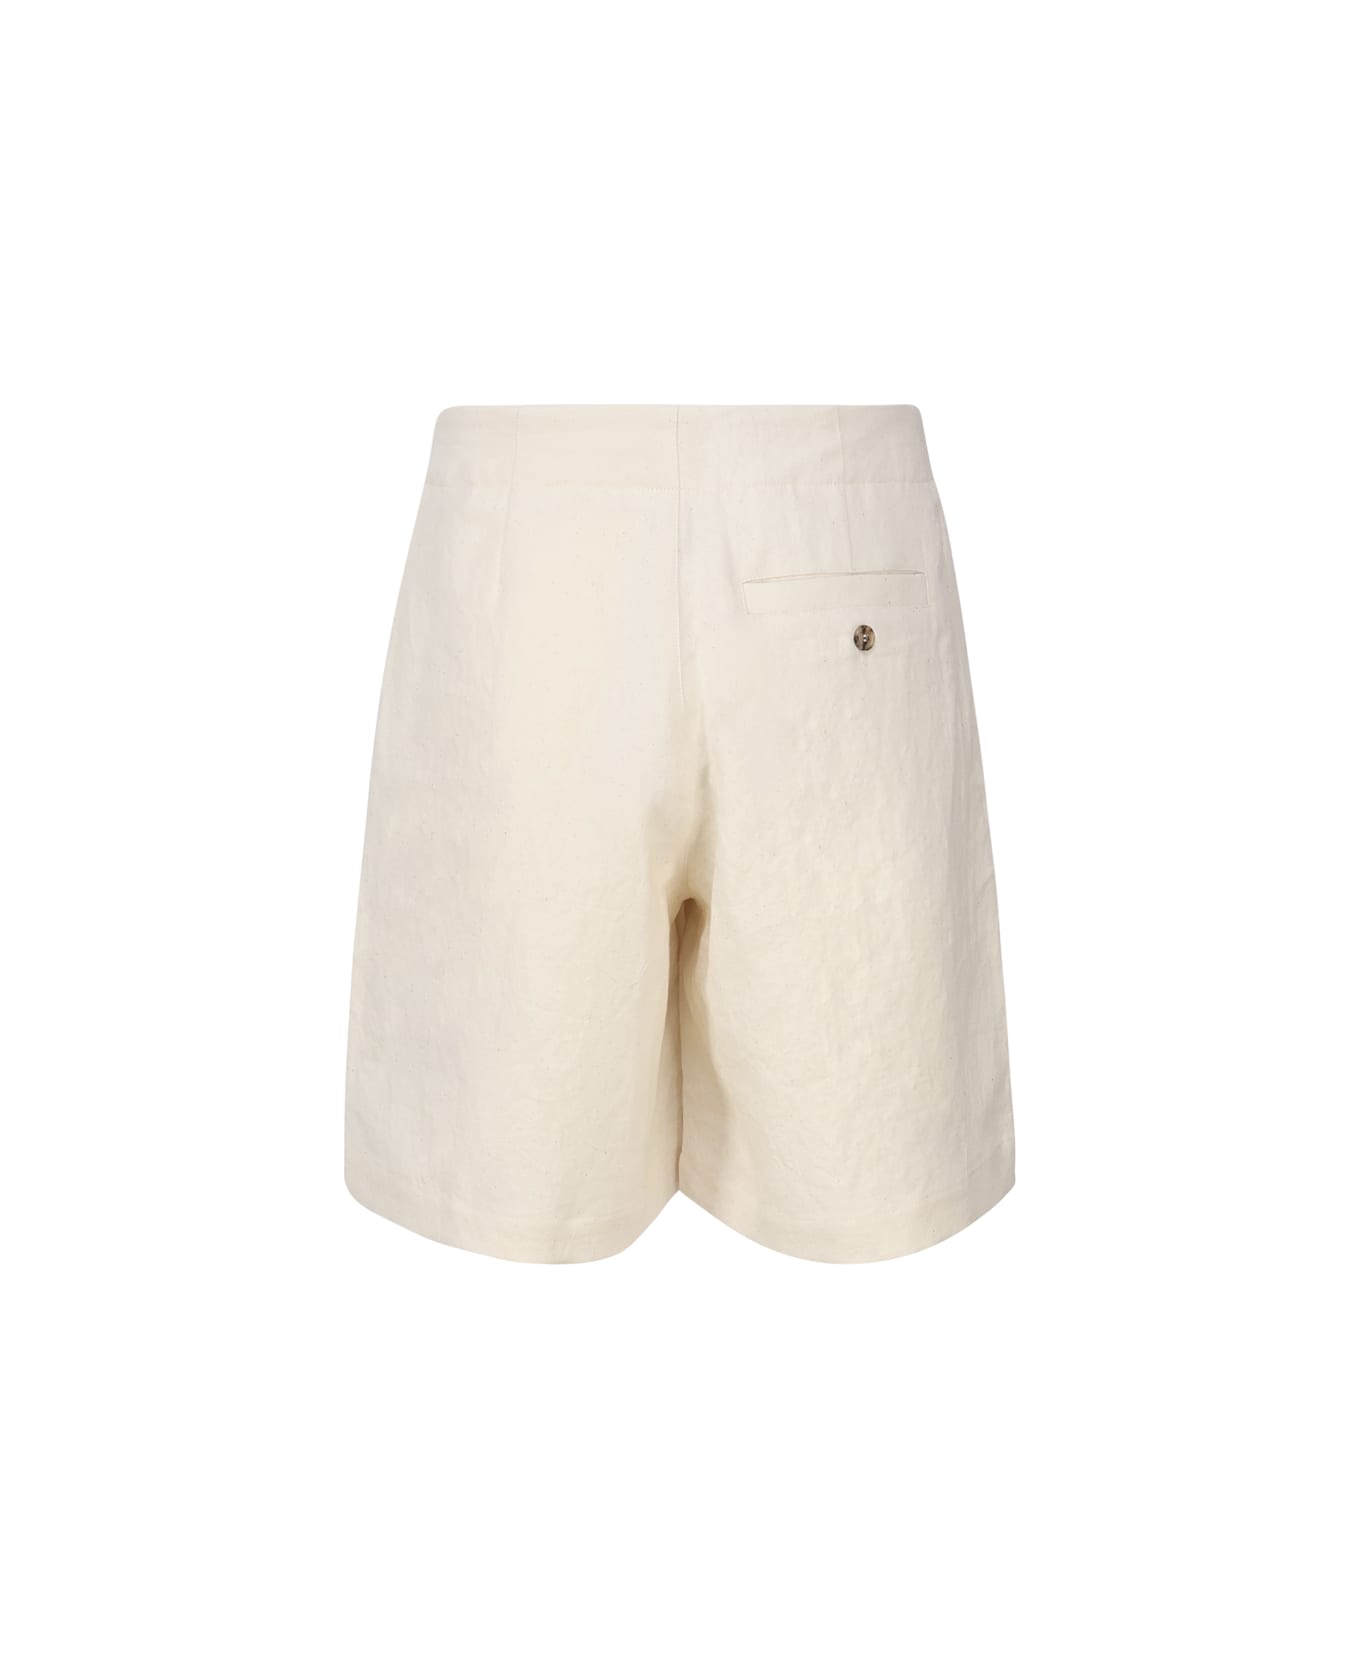 J.W. Anderson White Cotton Short - Beige ショートパンツ